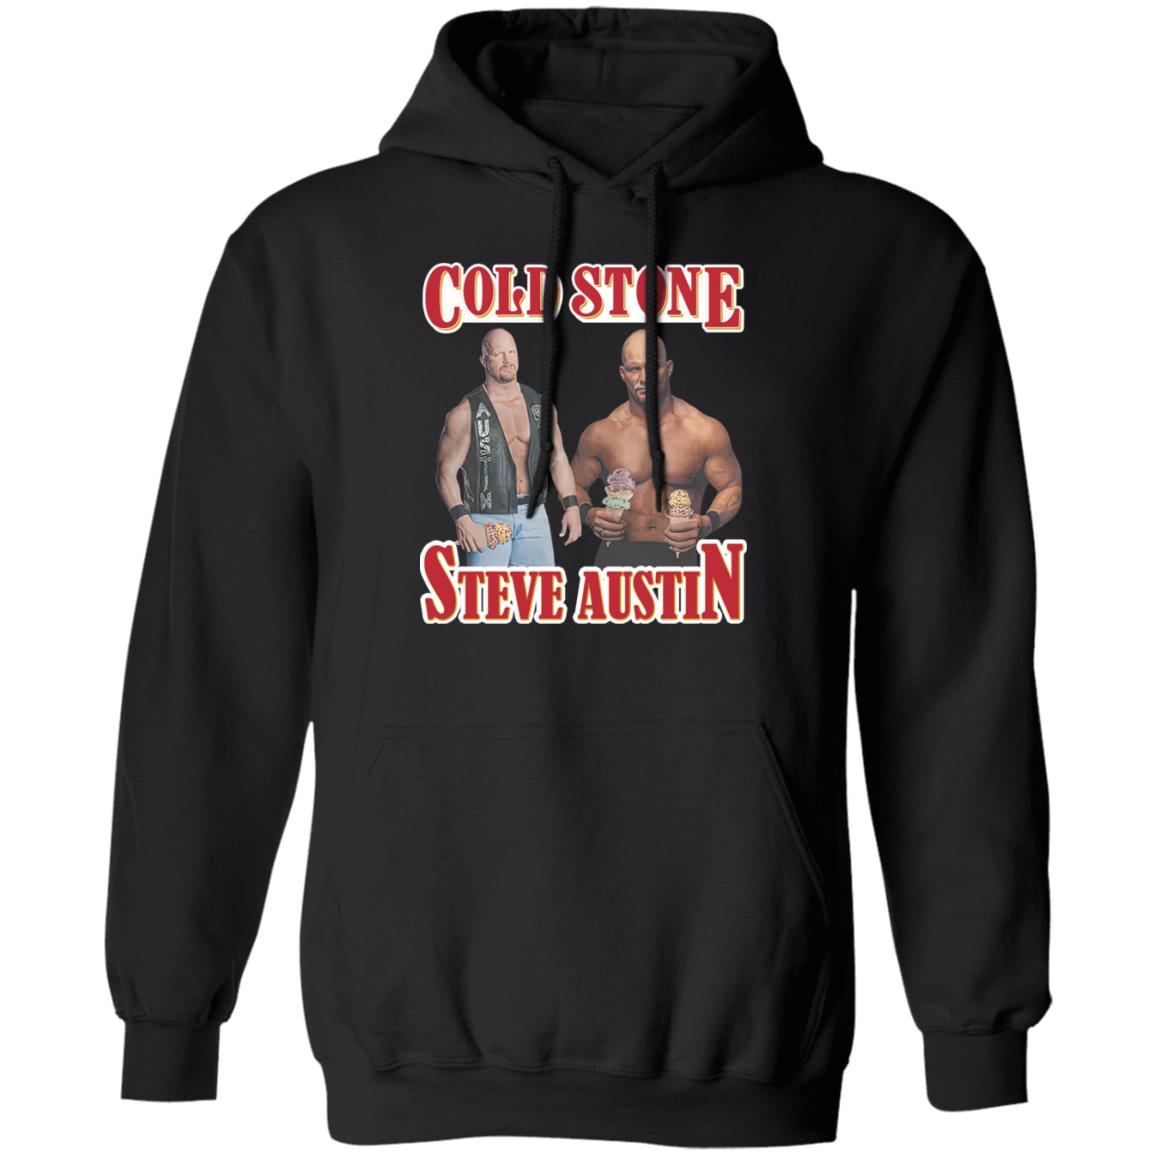 Cold Stone Steve Austin Shirt 1